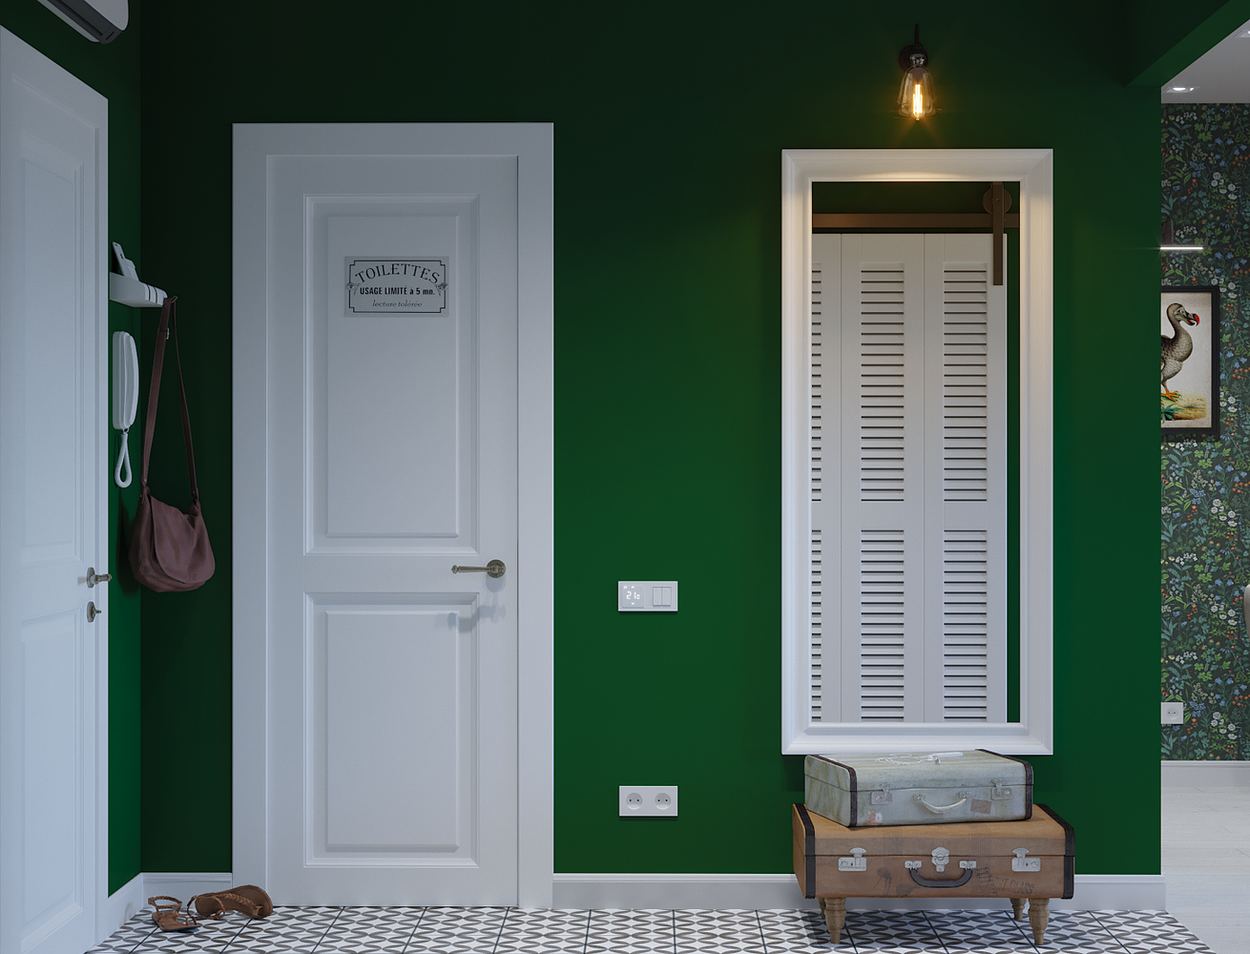 Căn hộ tạo ấn tượng ngay từ cái nhìn đầu tiên với bức tường màu xanh cho lối vào nhà. Bên trái là phòng tắm với cánh cửa sơn trắng, cạnh bên là tấm gương soi khổ lớn với ghế nghỉ chân theo kiểu dáng vali cũ độc lạ.